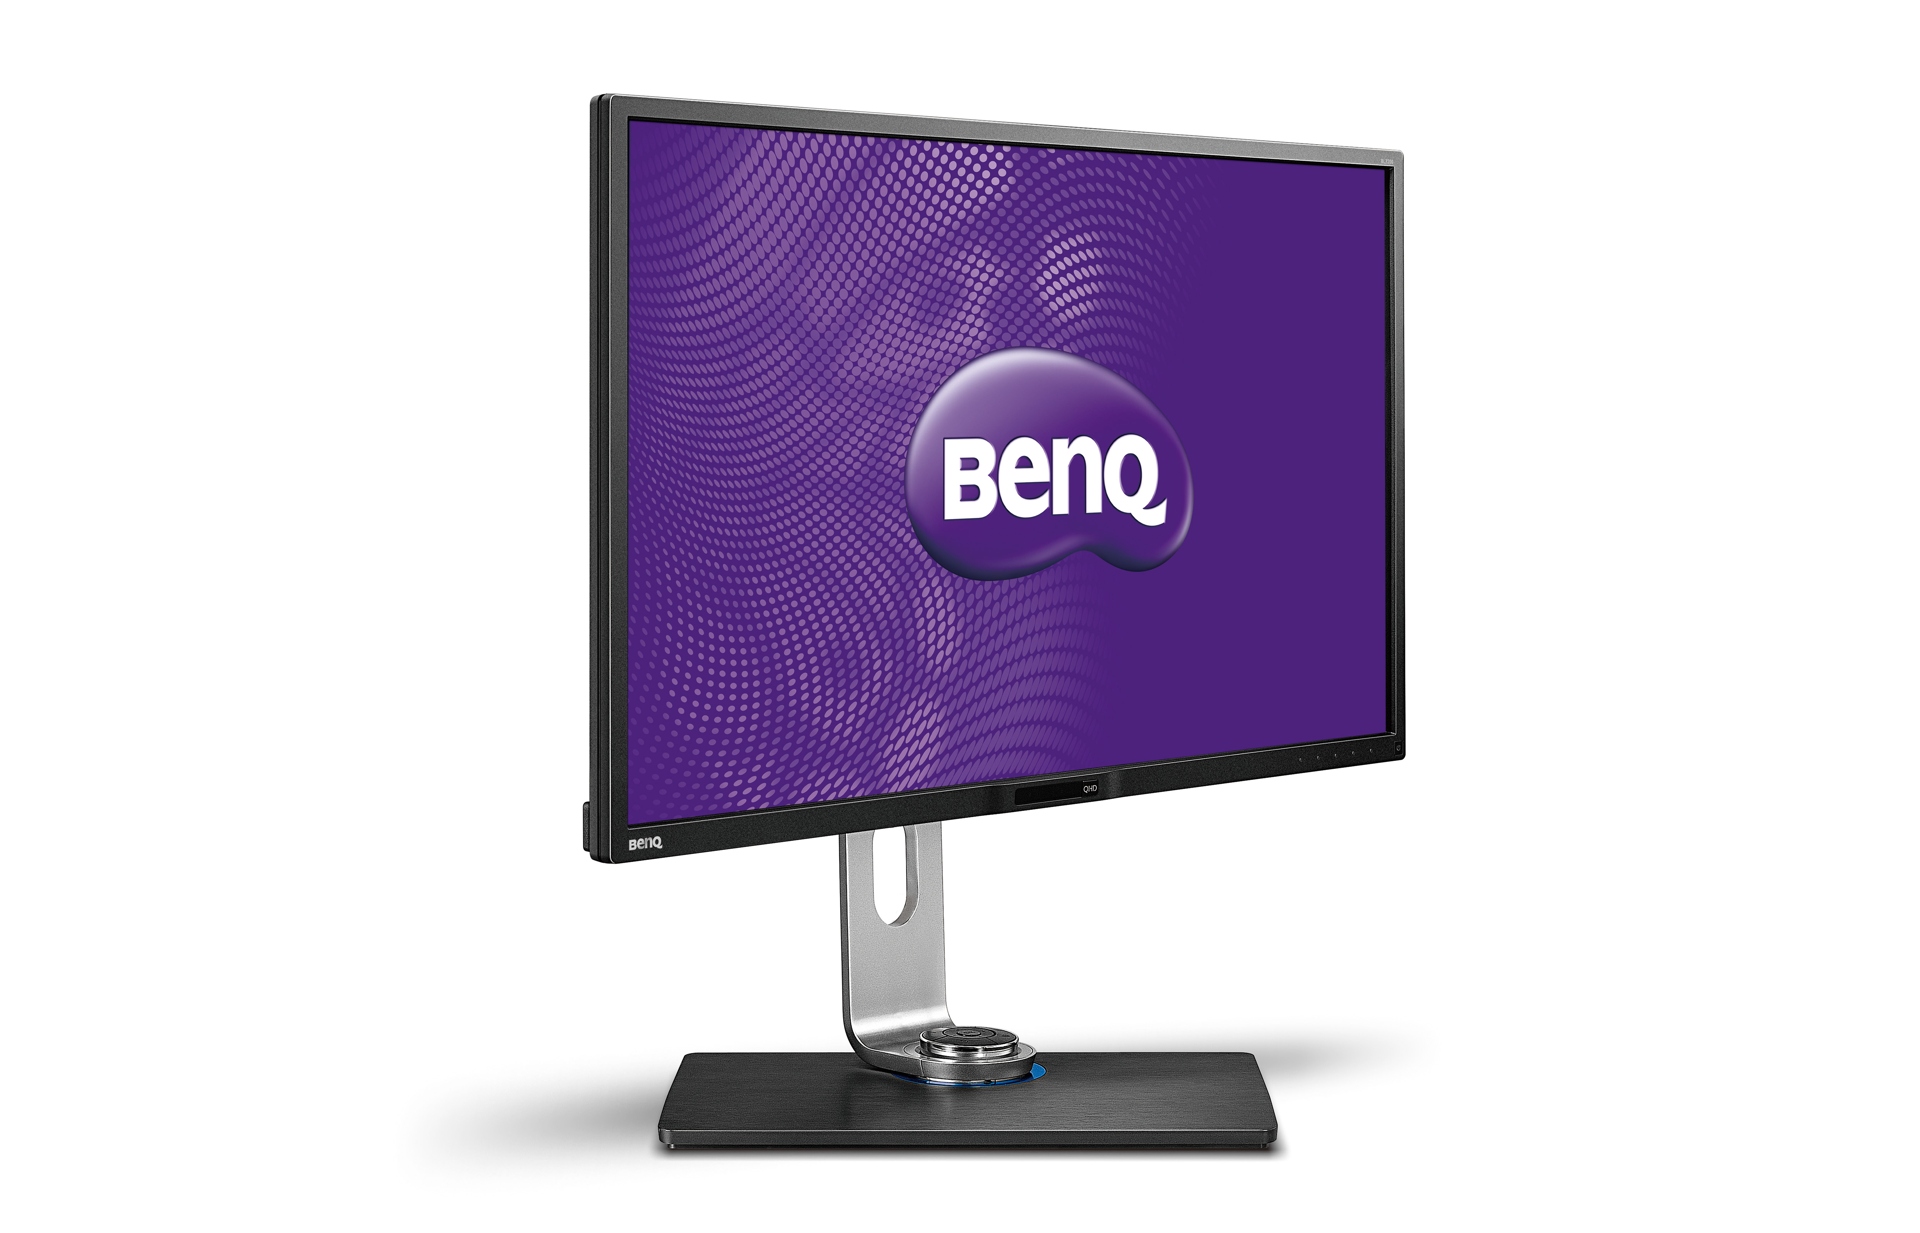 Immagine pubblicata in relazione al seguente contenuto: BenQ introduce il monitor Wide Quad High Definition BL3200PT | Nome immagine: news21130_Benq-bl3200pt_1.jpg